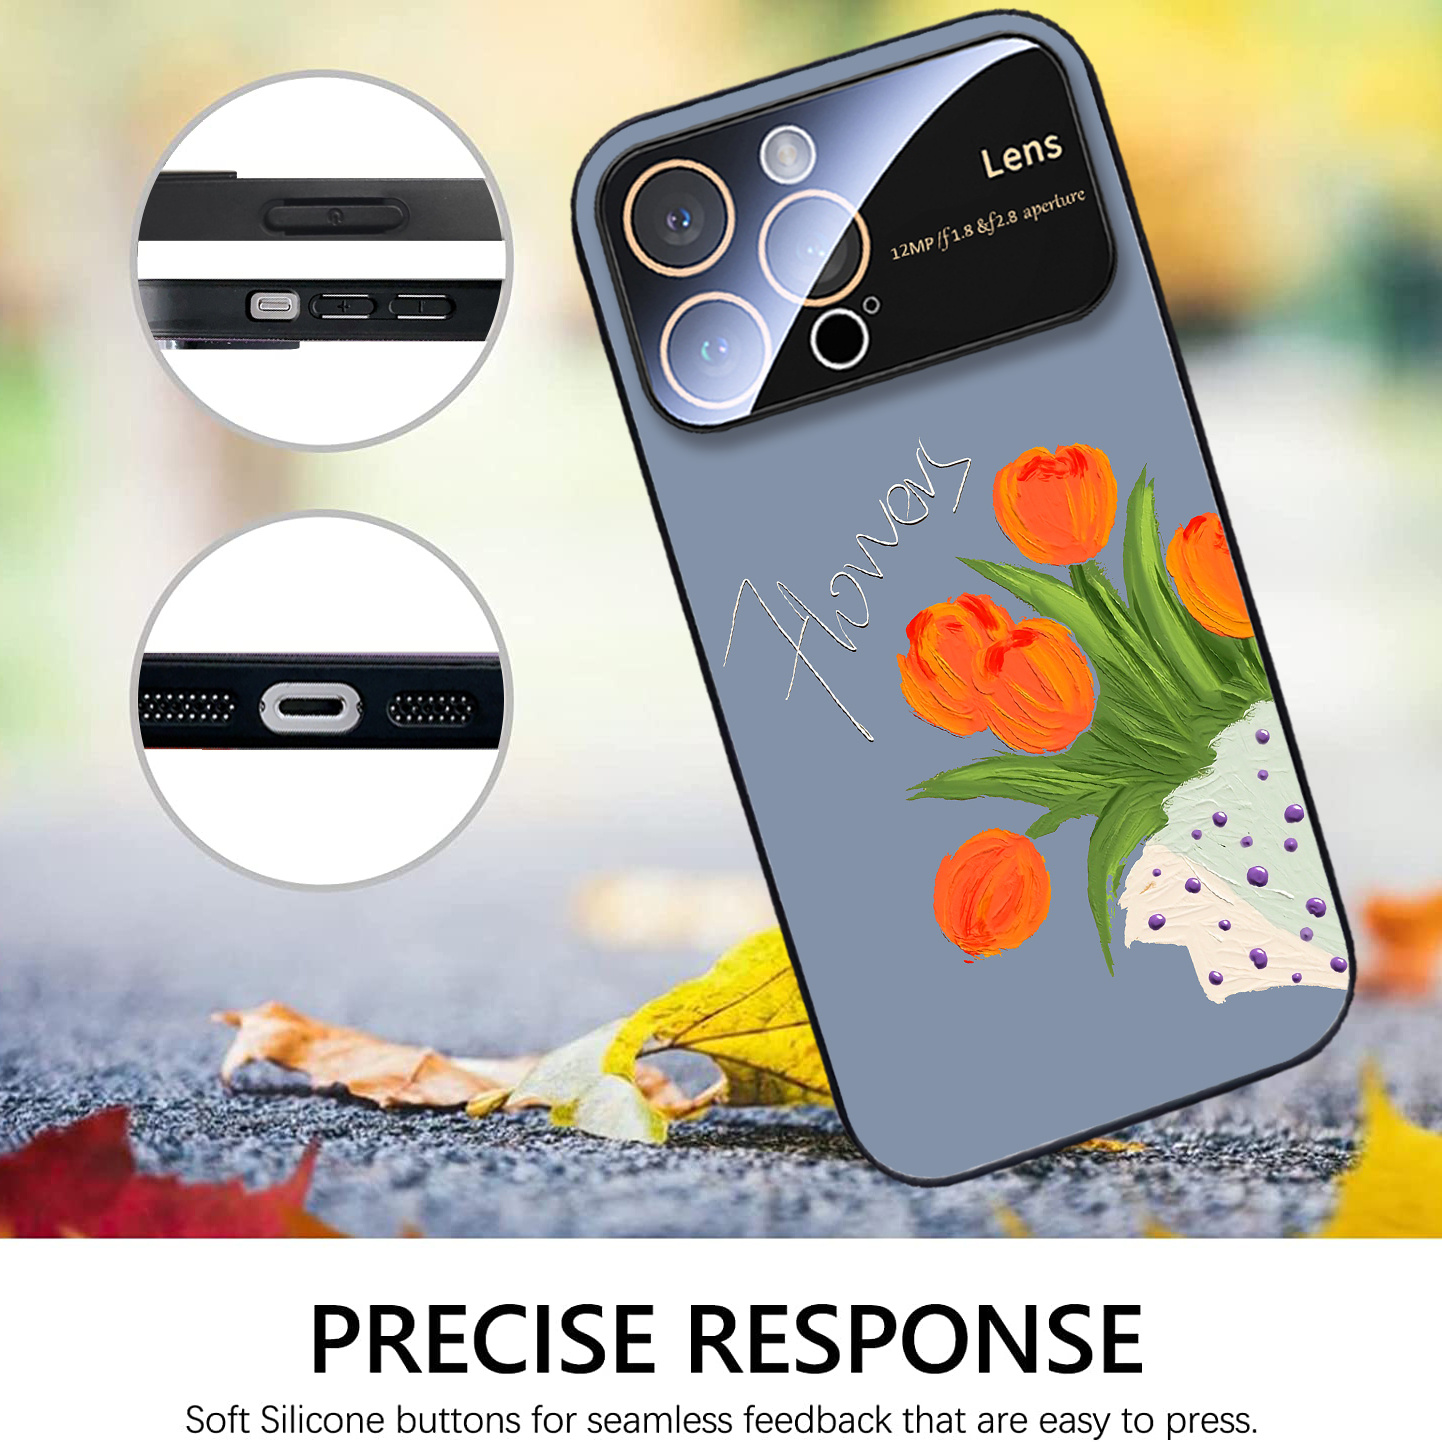 Cristal protector con efecto espejo para iPhone 11 Pro/XS/X